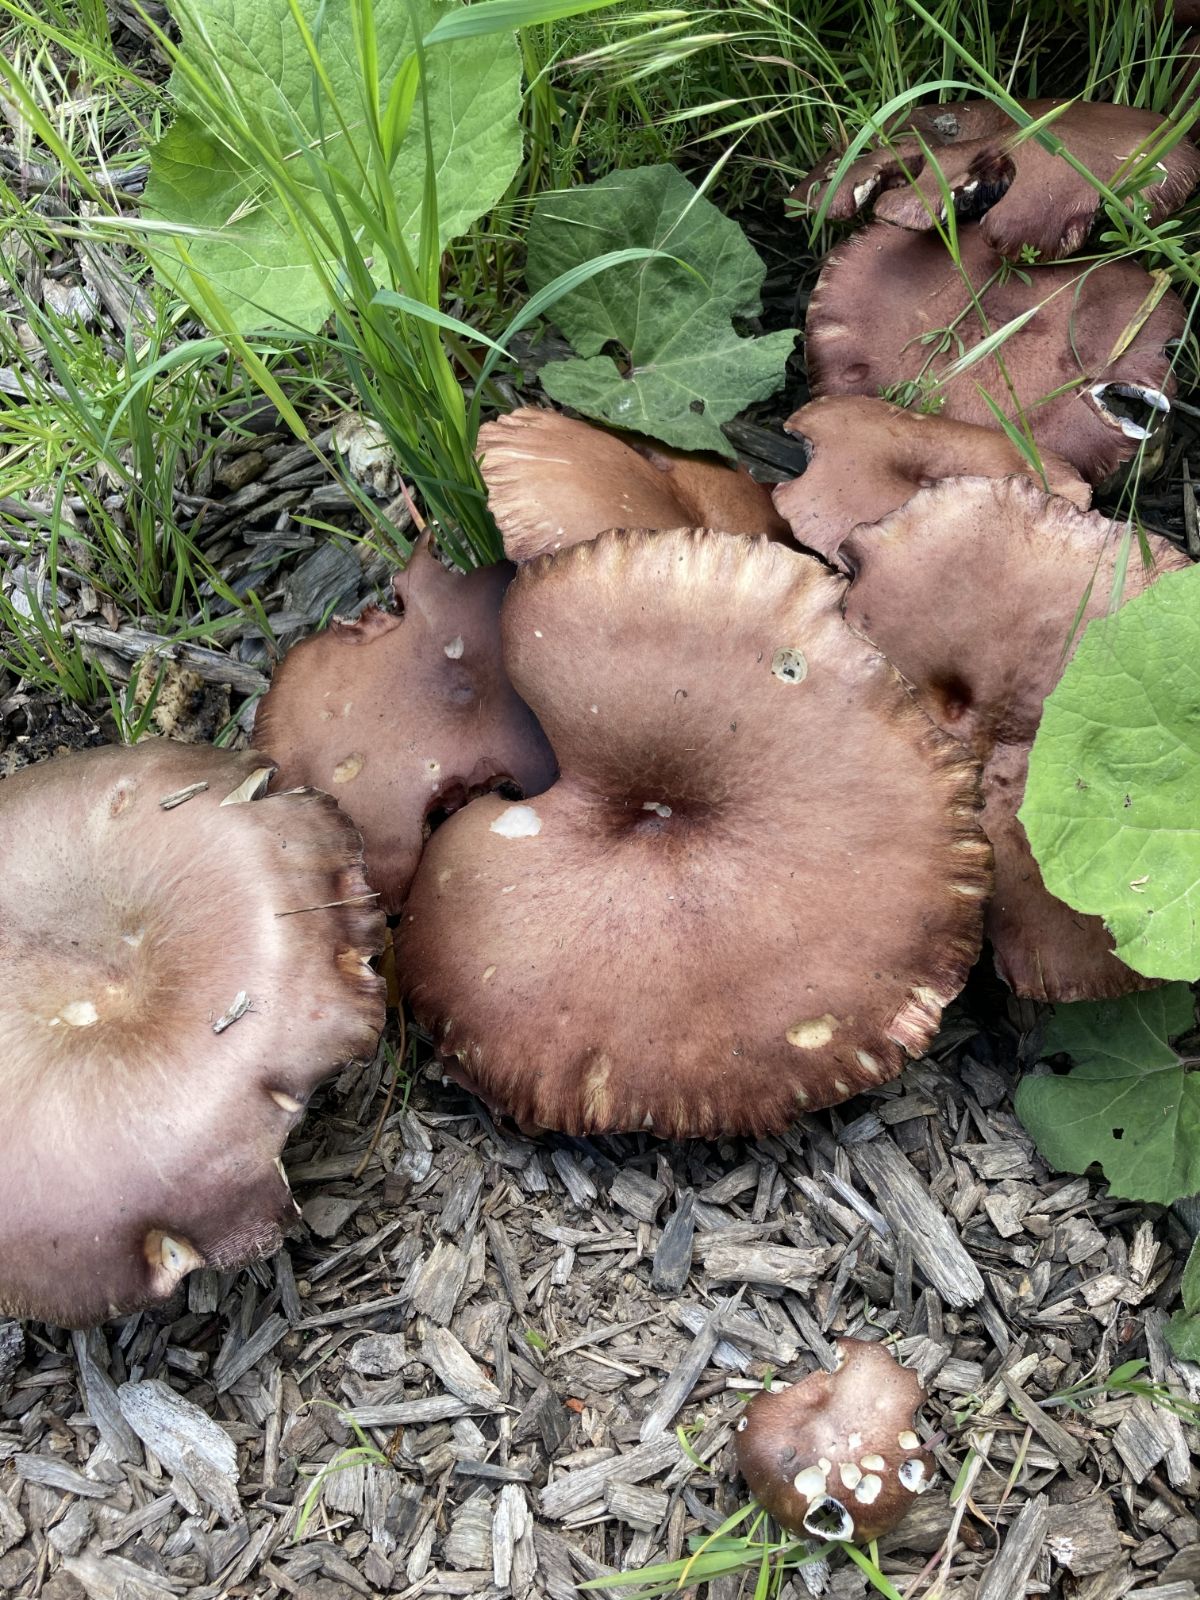 wine cap mushrooms